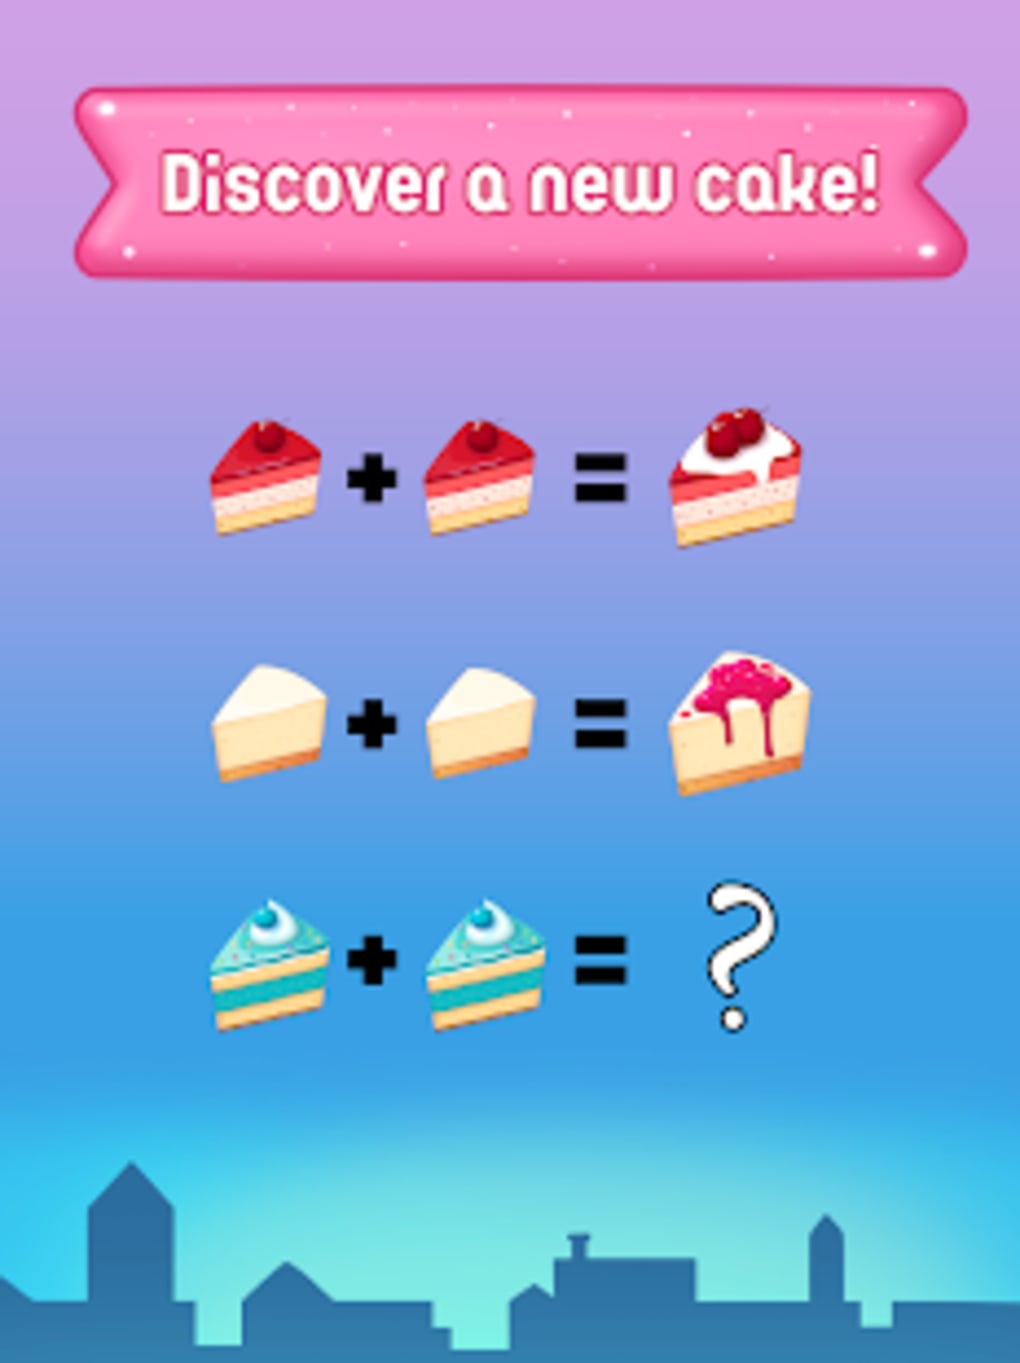 Merge Cakes Poki android iOS apk download for free-TapTap